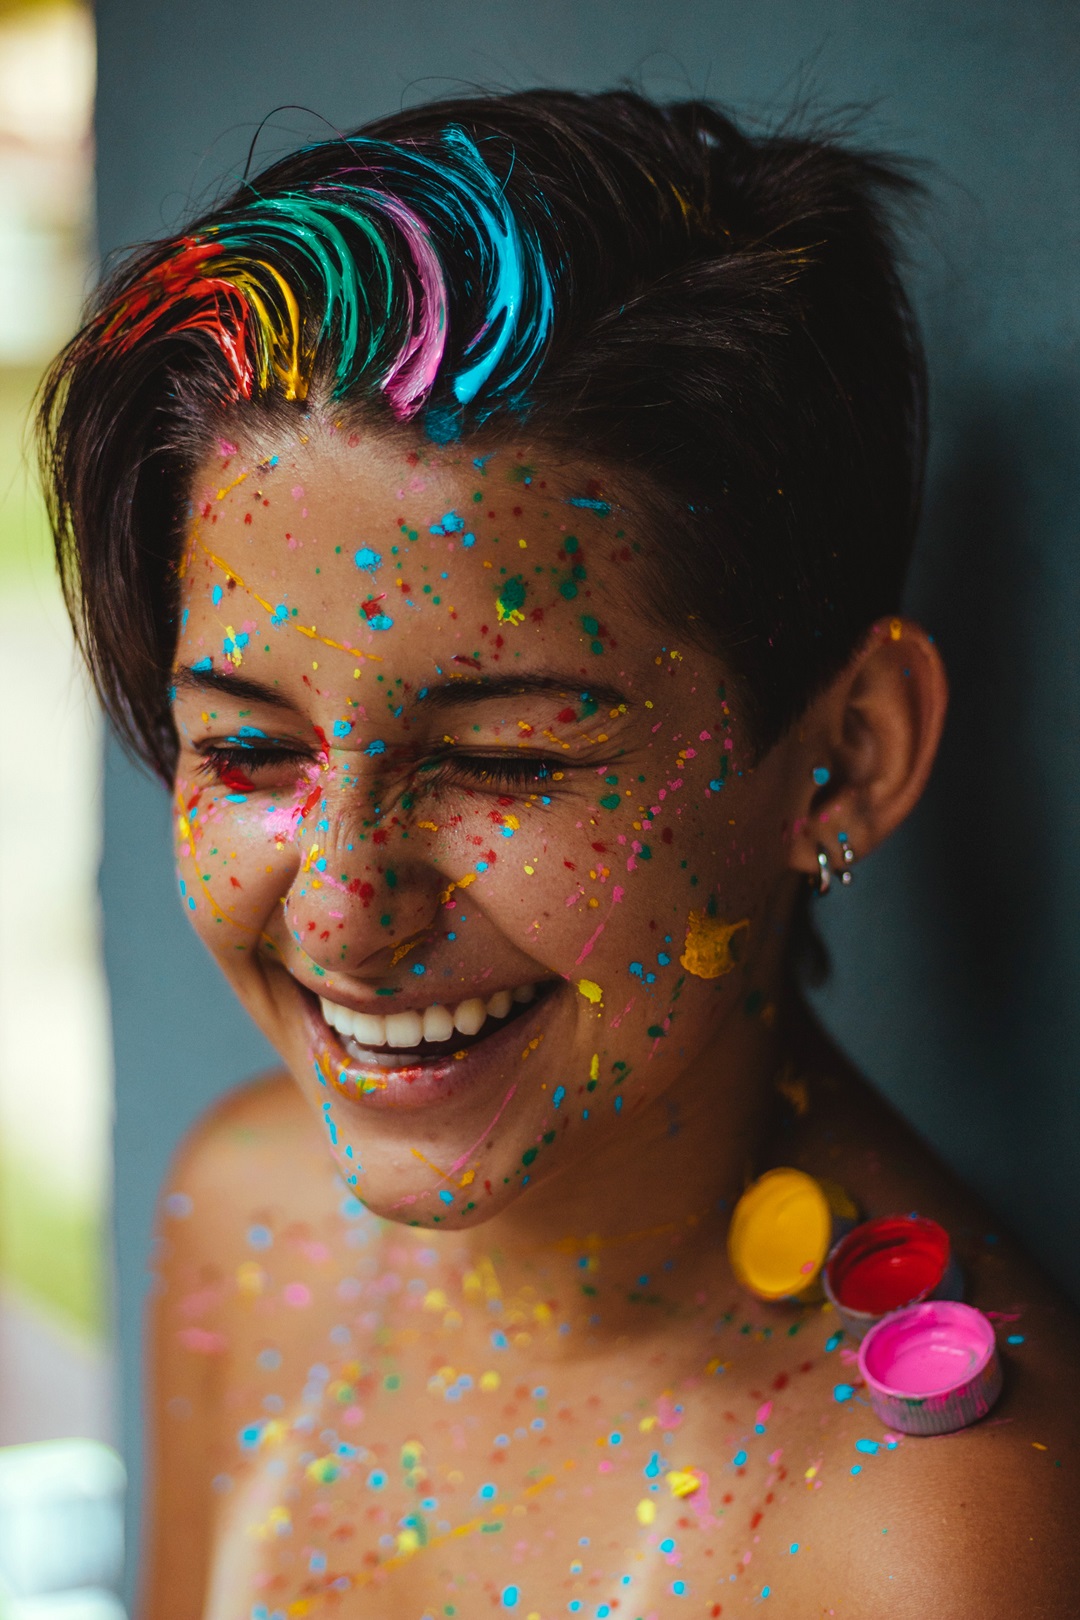 Mujer de cabello corto sonriendo riendo con pinturas de colores